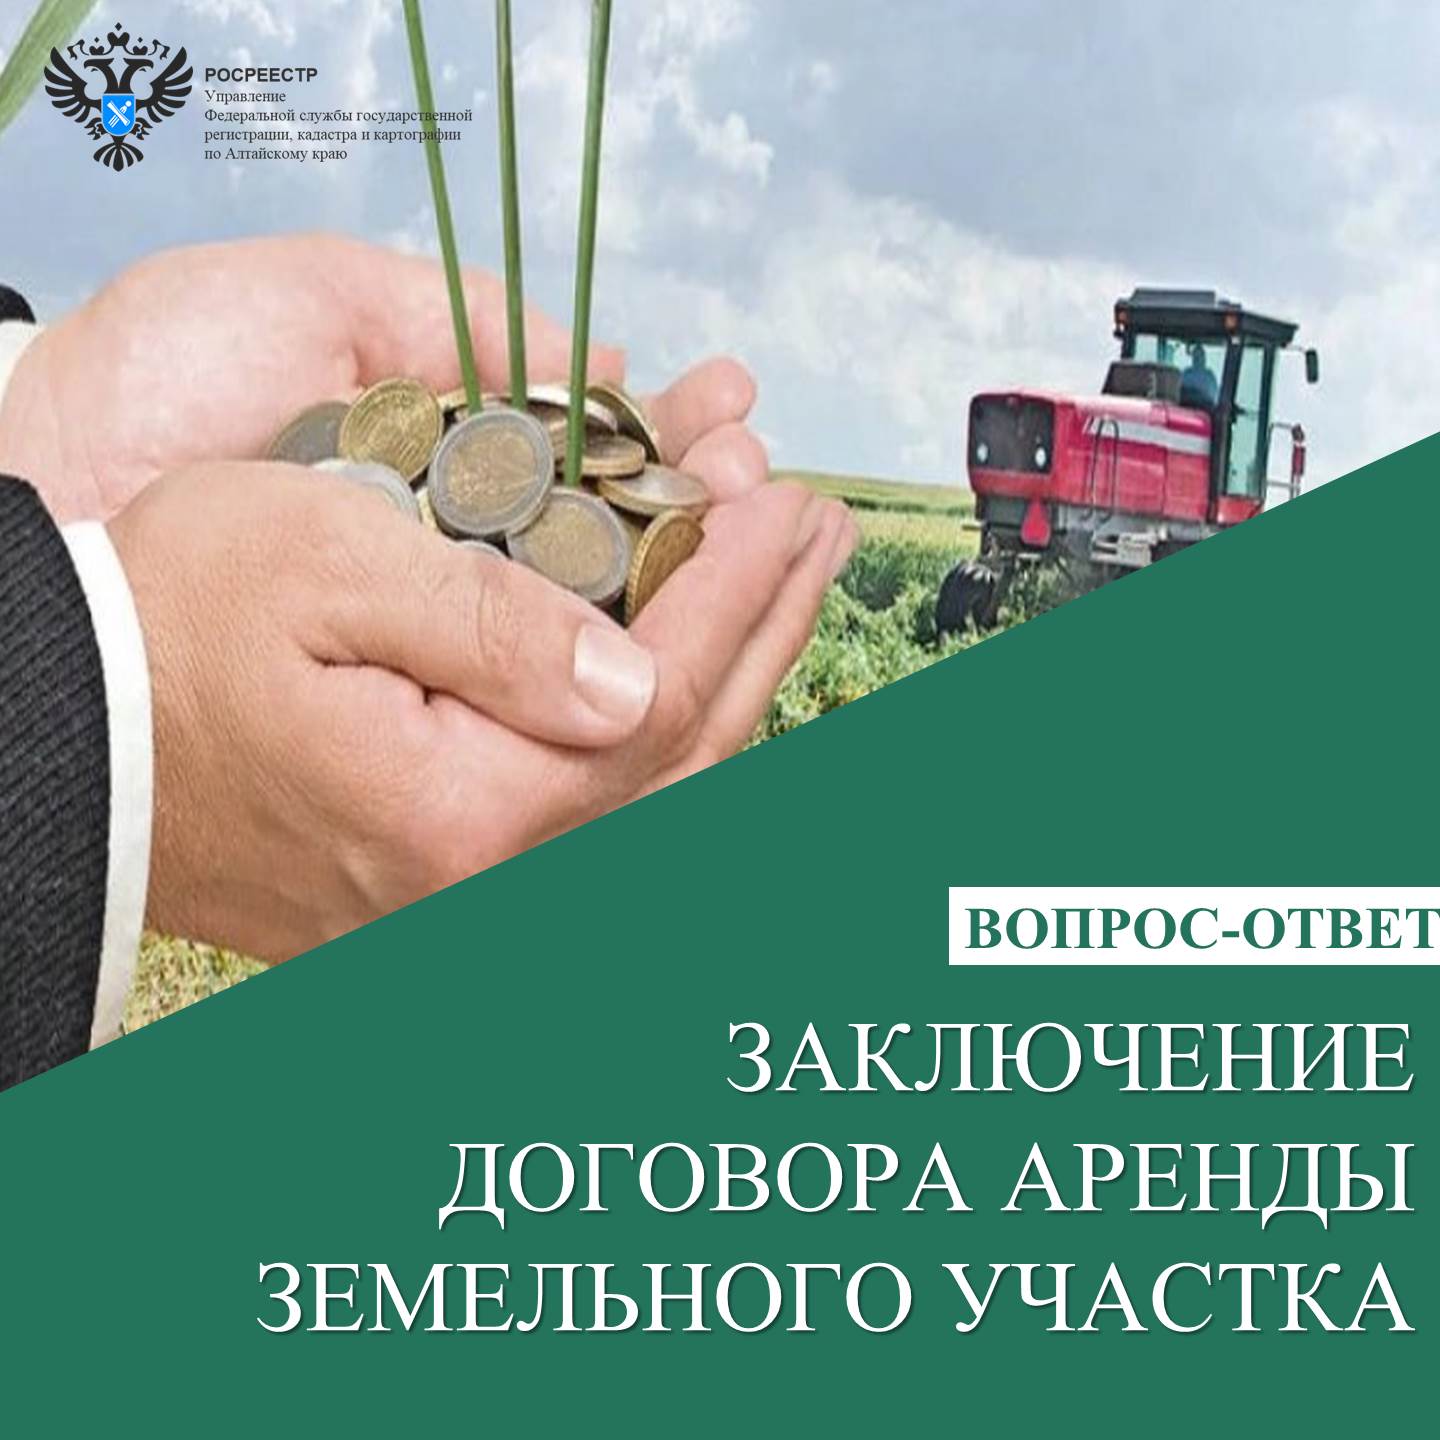 Заключение договора аренды земельного участка сельскохозяйственного назначения.